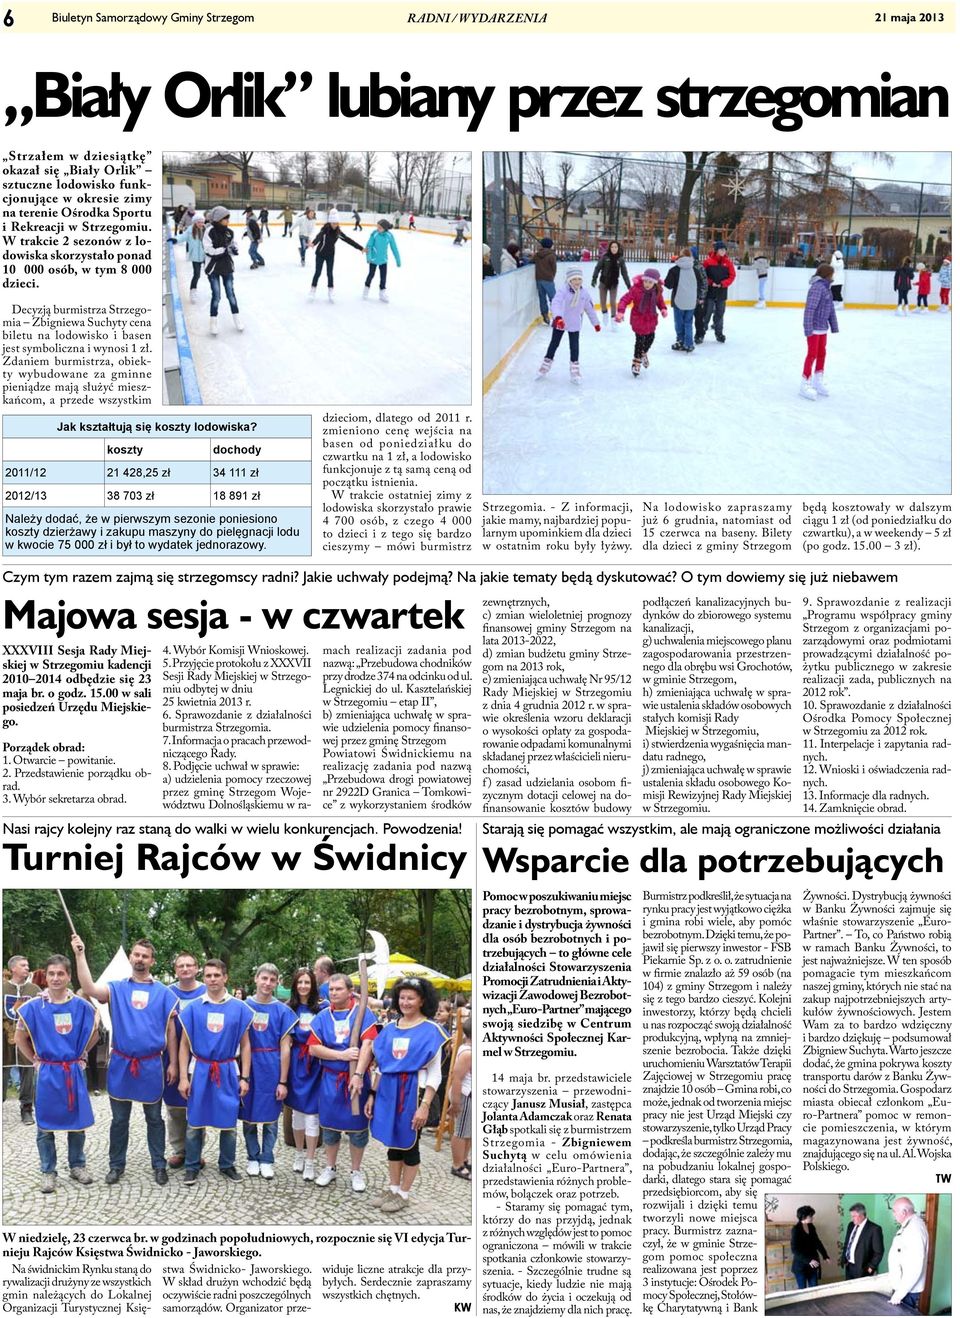 Decyzją burmistrza Strzegomia Zbigniewa Suchyty cena biletu na lodowisko i basen jest symboliczna i wynosi 1 zł.